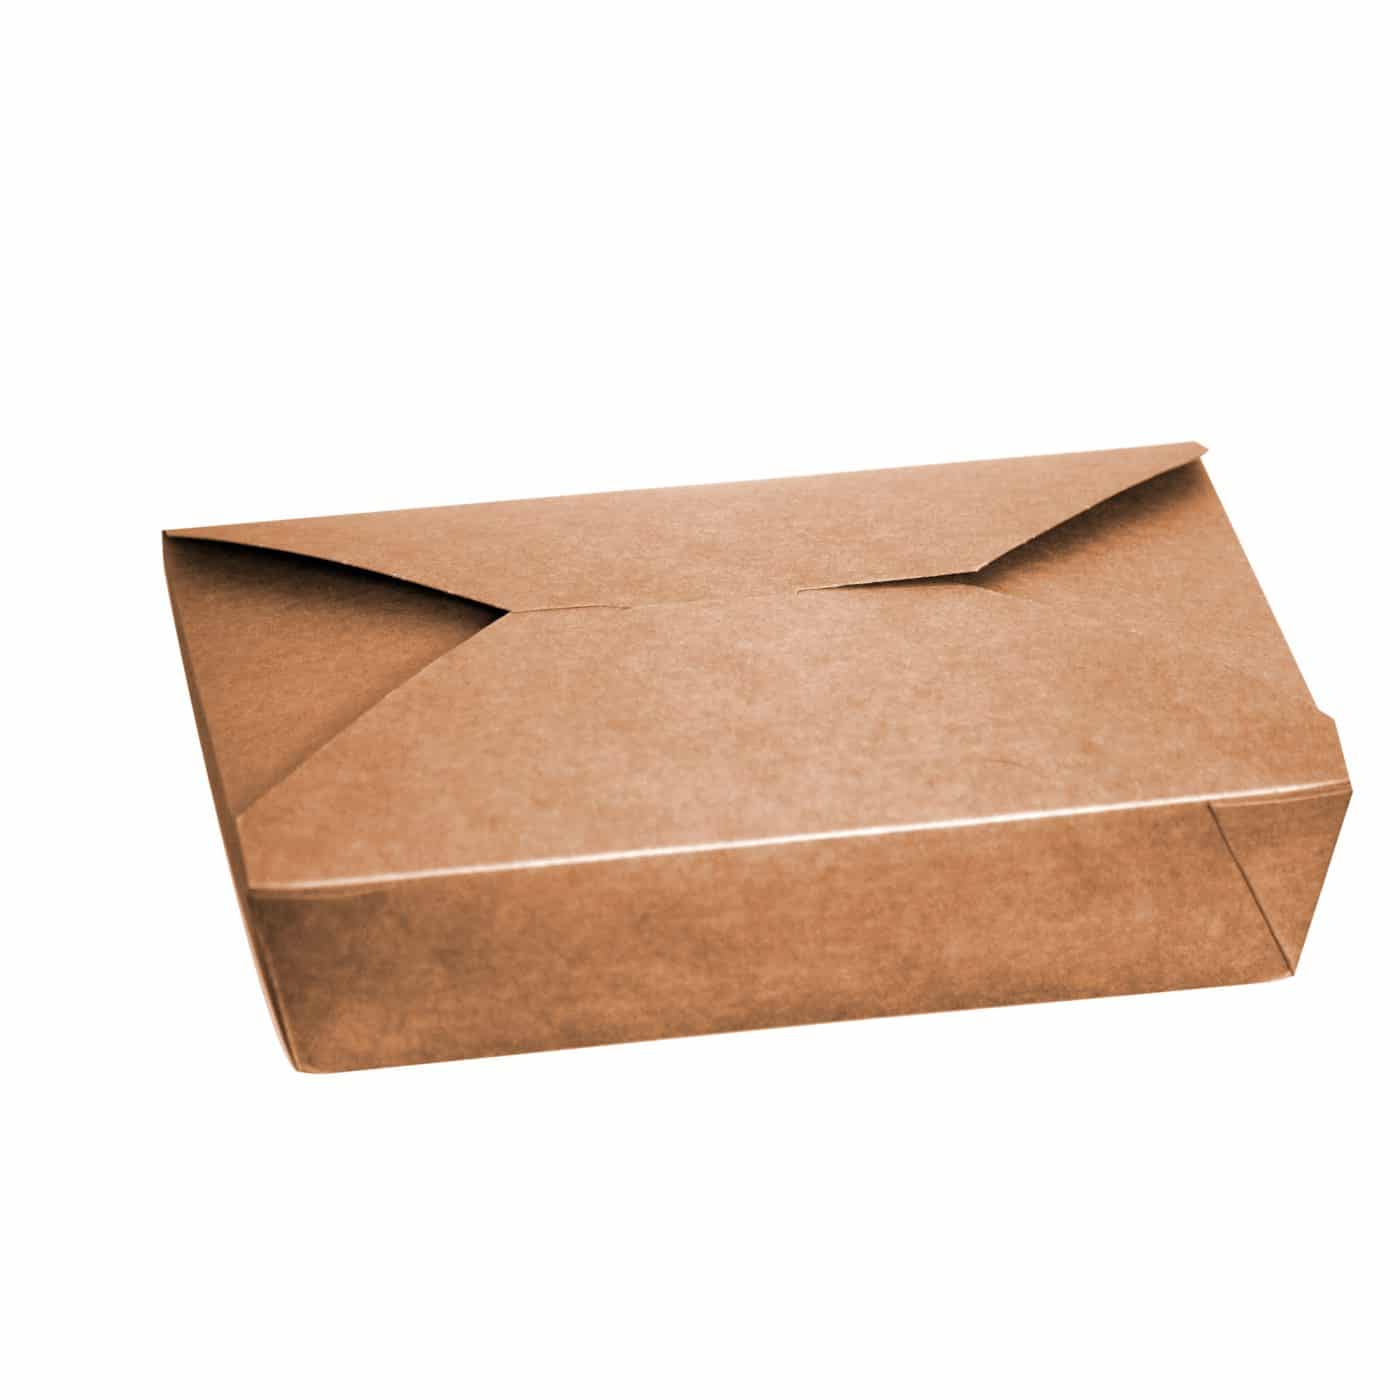 Kraft (Brown) Leakproof Food Carton (Code 2, AM104) - 51oz/1449ml, pack of 280